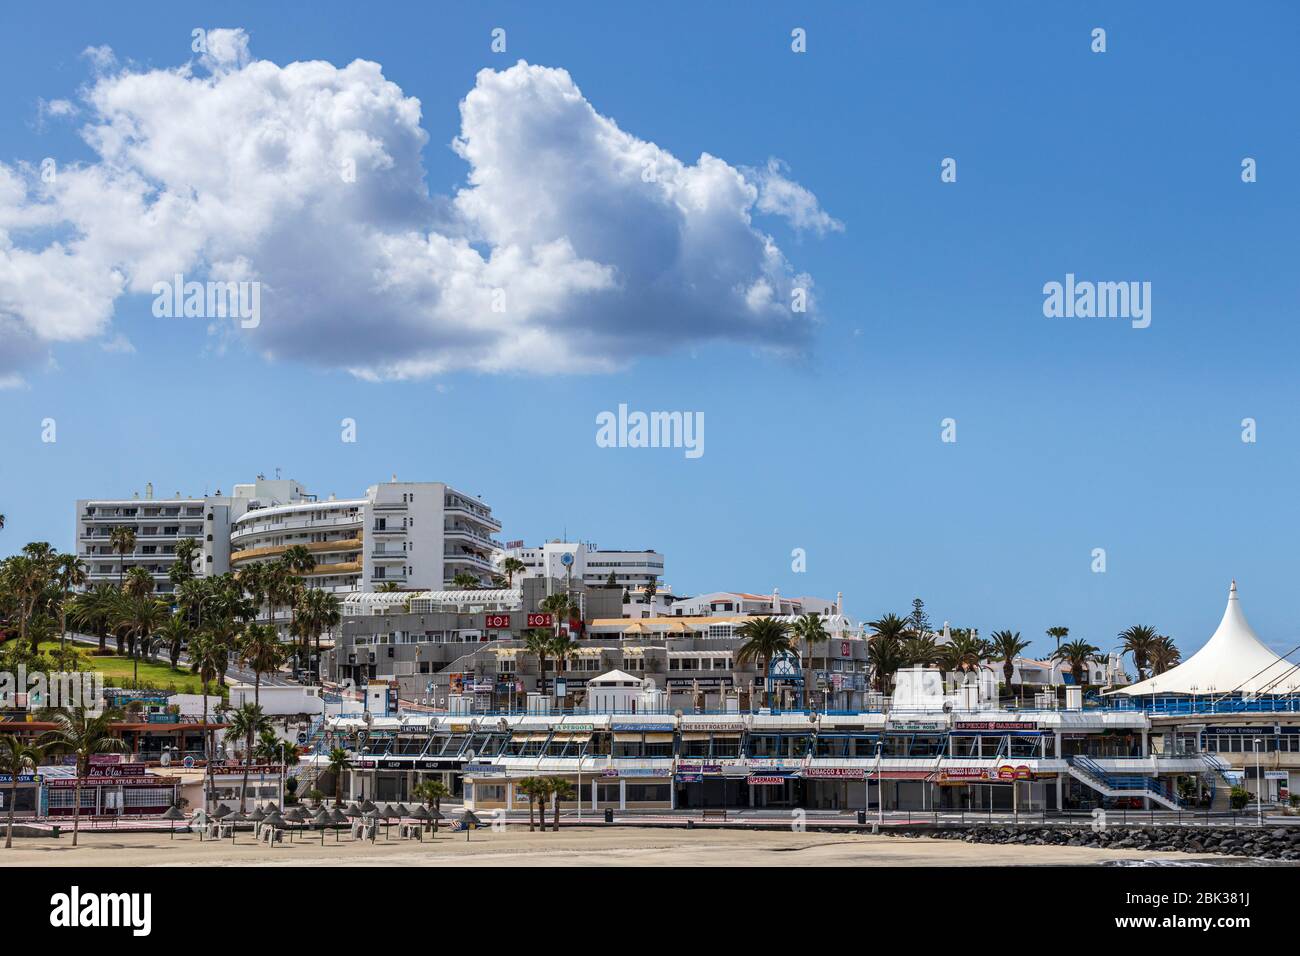 Leere Strände in den touristischen Gebieten von Costa Adeje, Teneriffa, Kanarische Inseln, Spanien Stockfoto